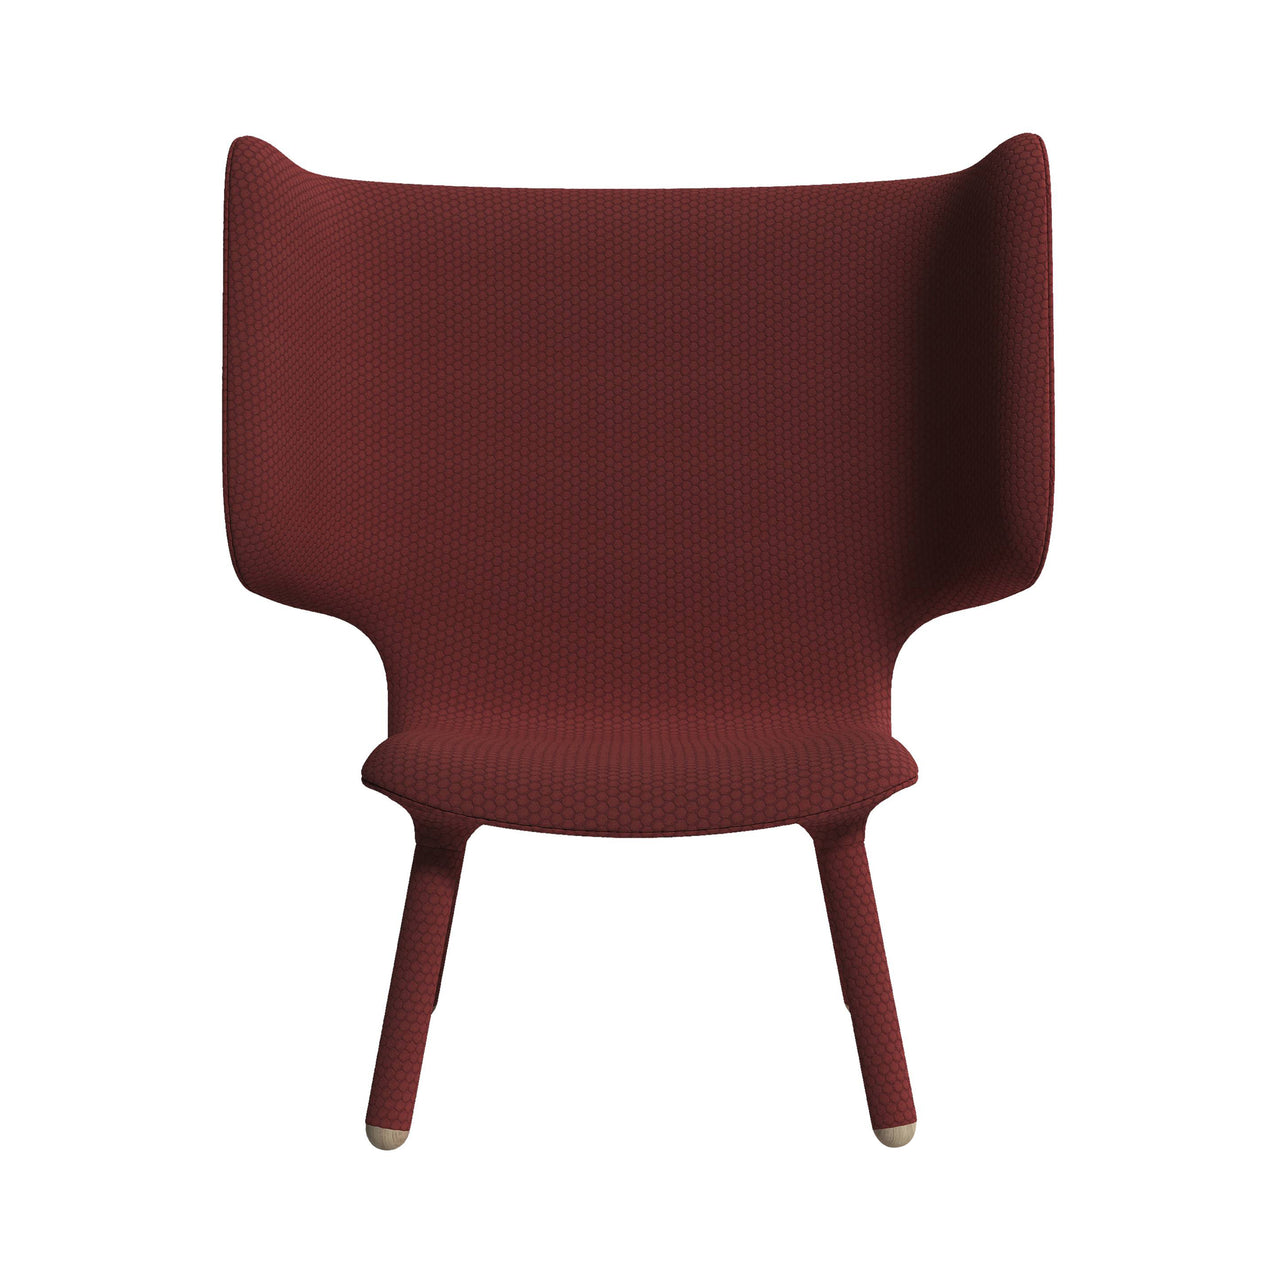 Tembo Lounge Chair